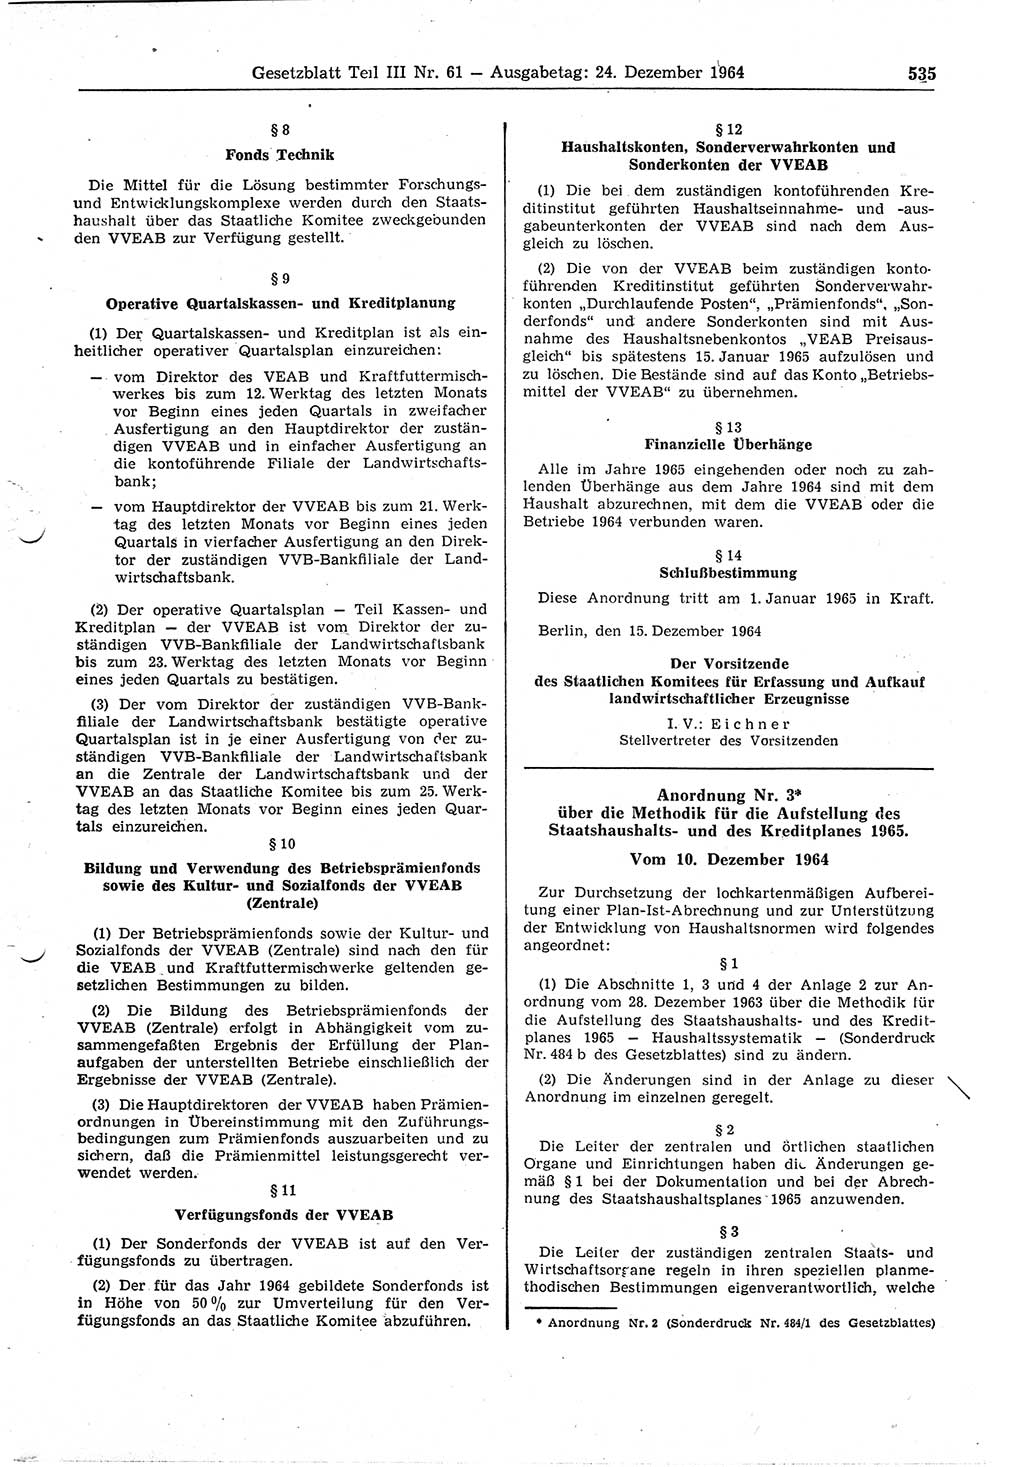 Gesetzblatt (GBl.) der Deutschen Demokratischen Republik (DDR) Teil ⅠⅠⅠ 1964, Seite 535 (GBl. DDR ⅠⅠⅠ 1964, S. 535)